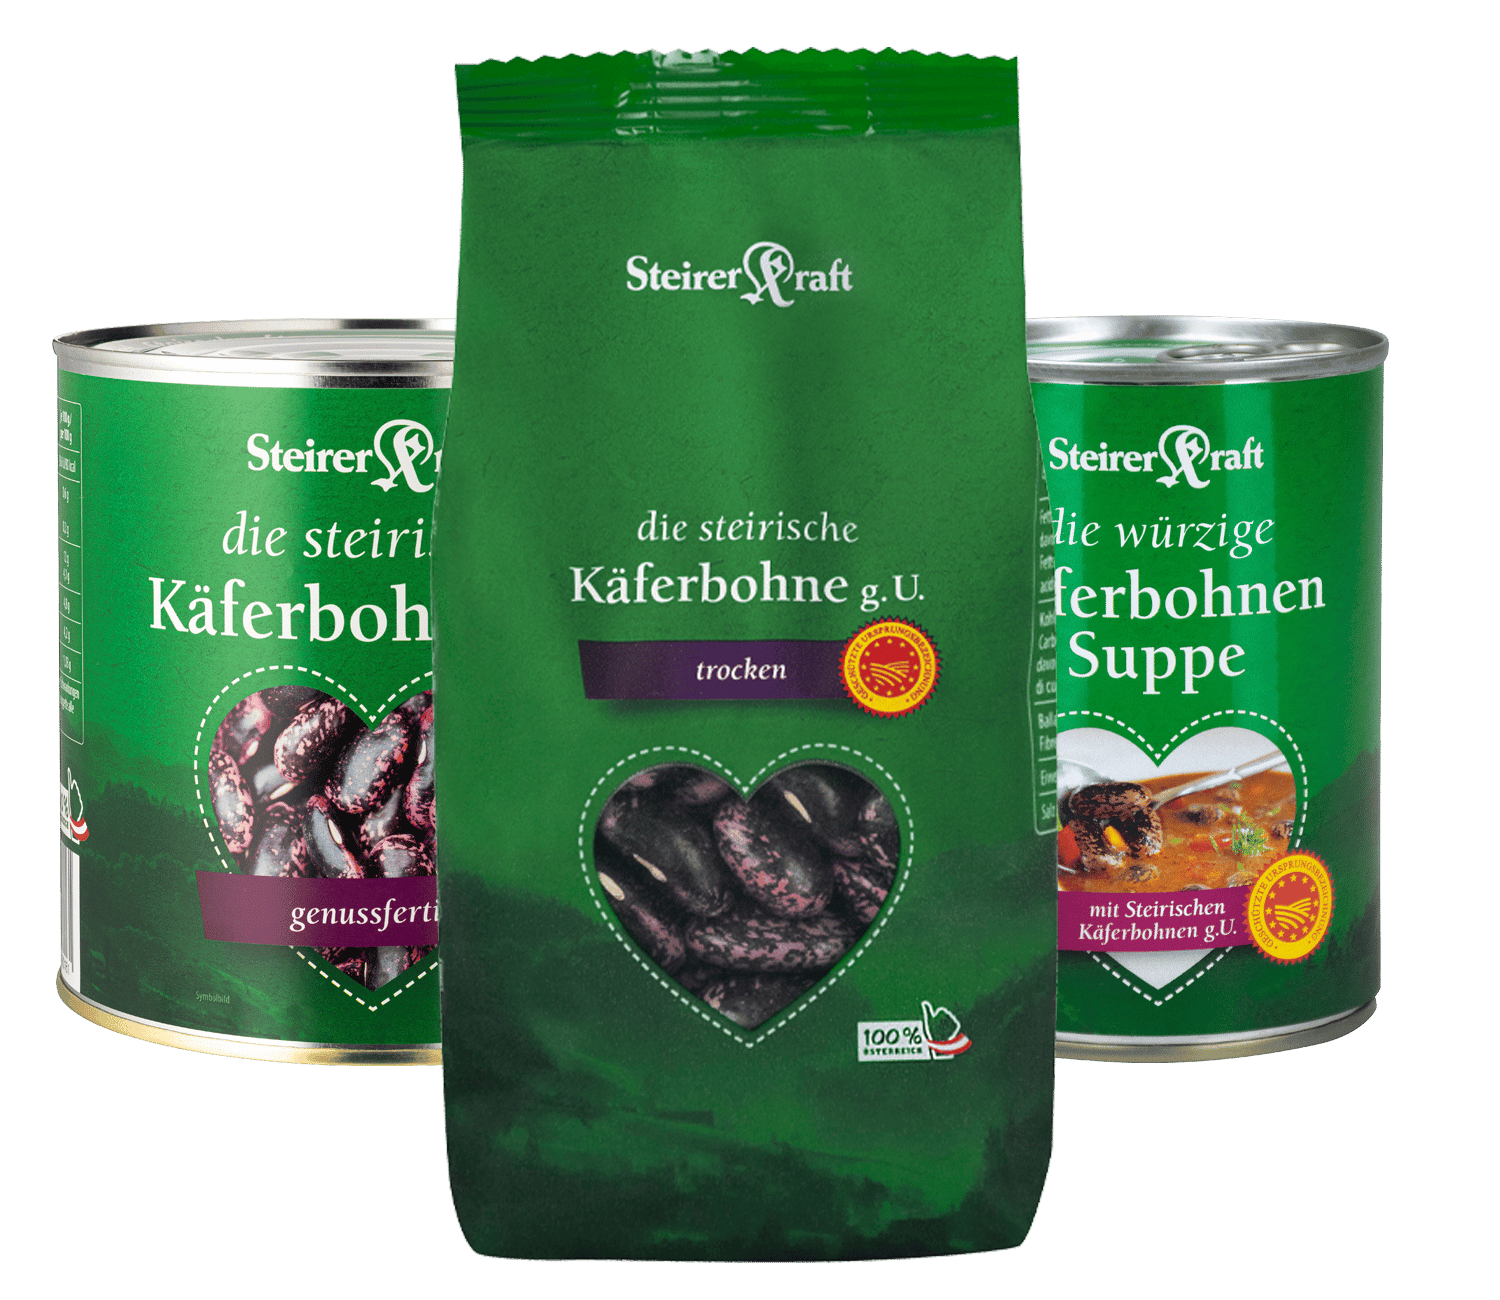 5 vegetarische Käferbohnen-Rezepte - Steirerkraft